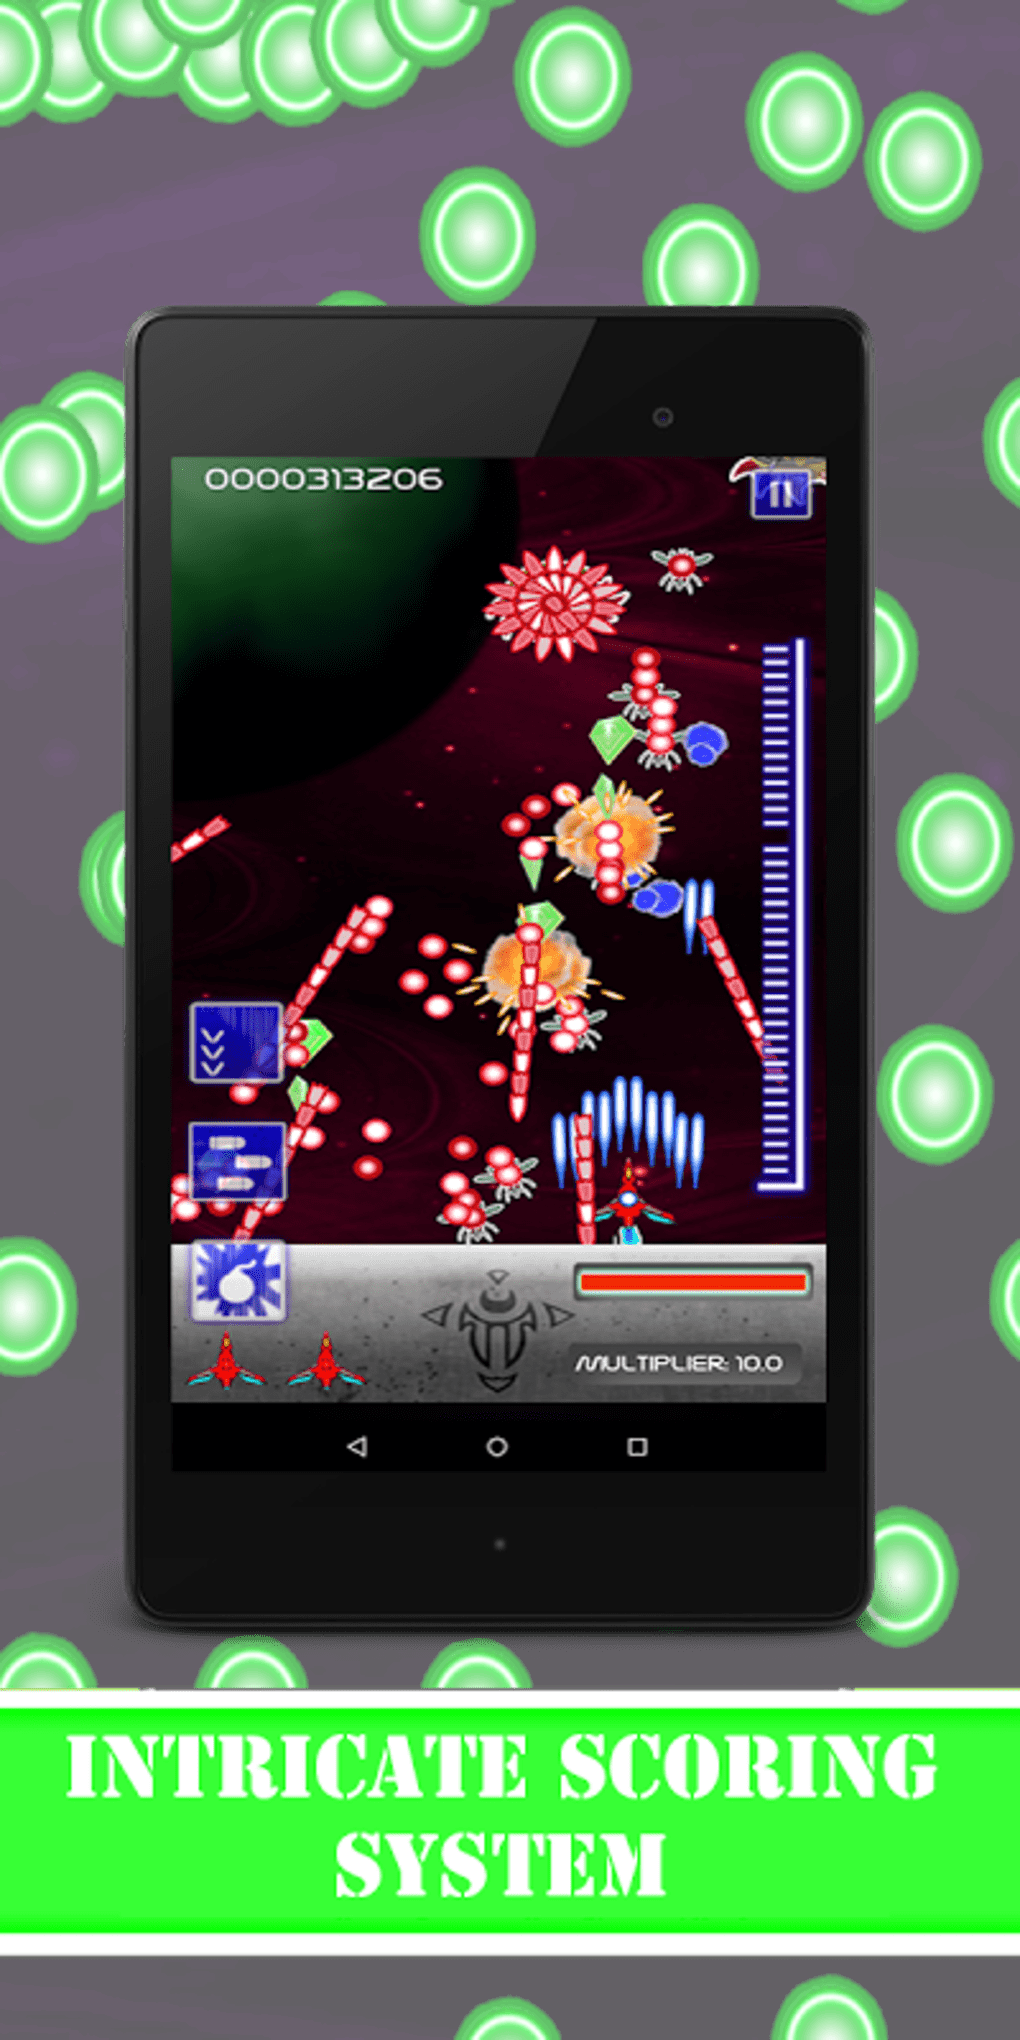 Labirinto Assustador APK - Baixar app grátis para Android